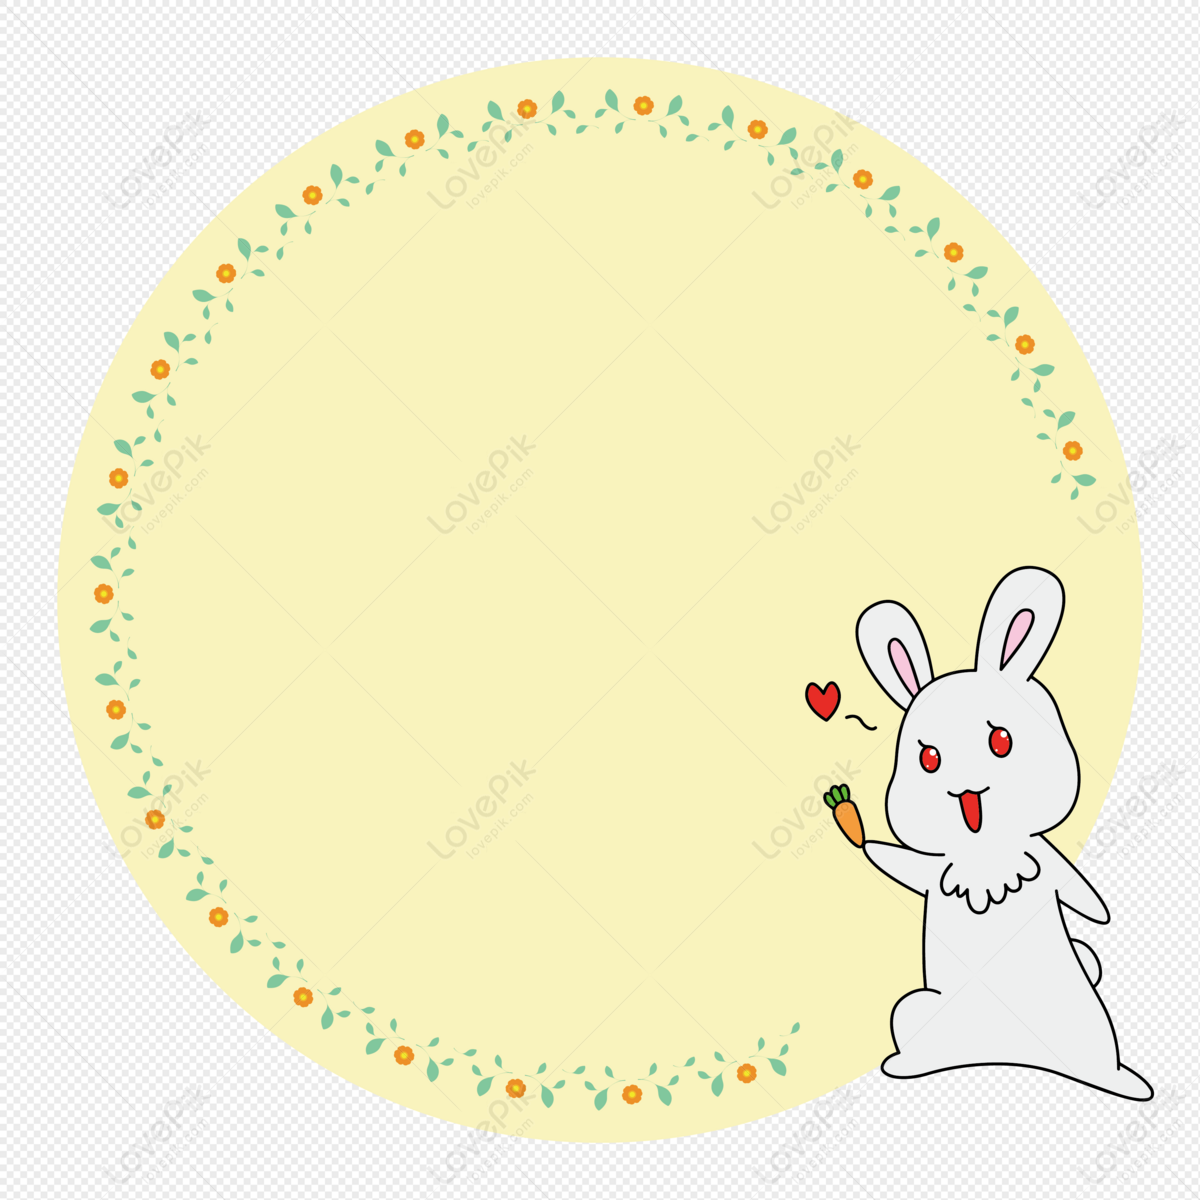 Với hình ảnh thỏ vàng cà rốt dễ thương, bạn sẽ không thể rời mắt khỏi chiếc ảnh này. Sự kết hợp giữa cà rốt tươi sáng và thỏ xinh xắn sẽ khiến bạn đắm chìm trong cảm giác hạnh phúc và ngọt ngào.